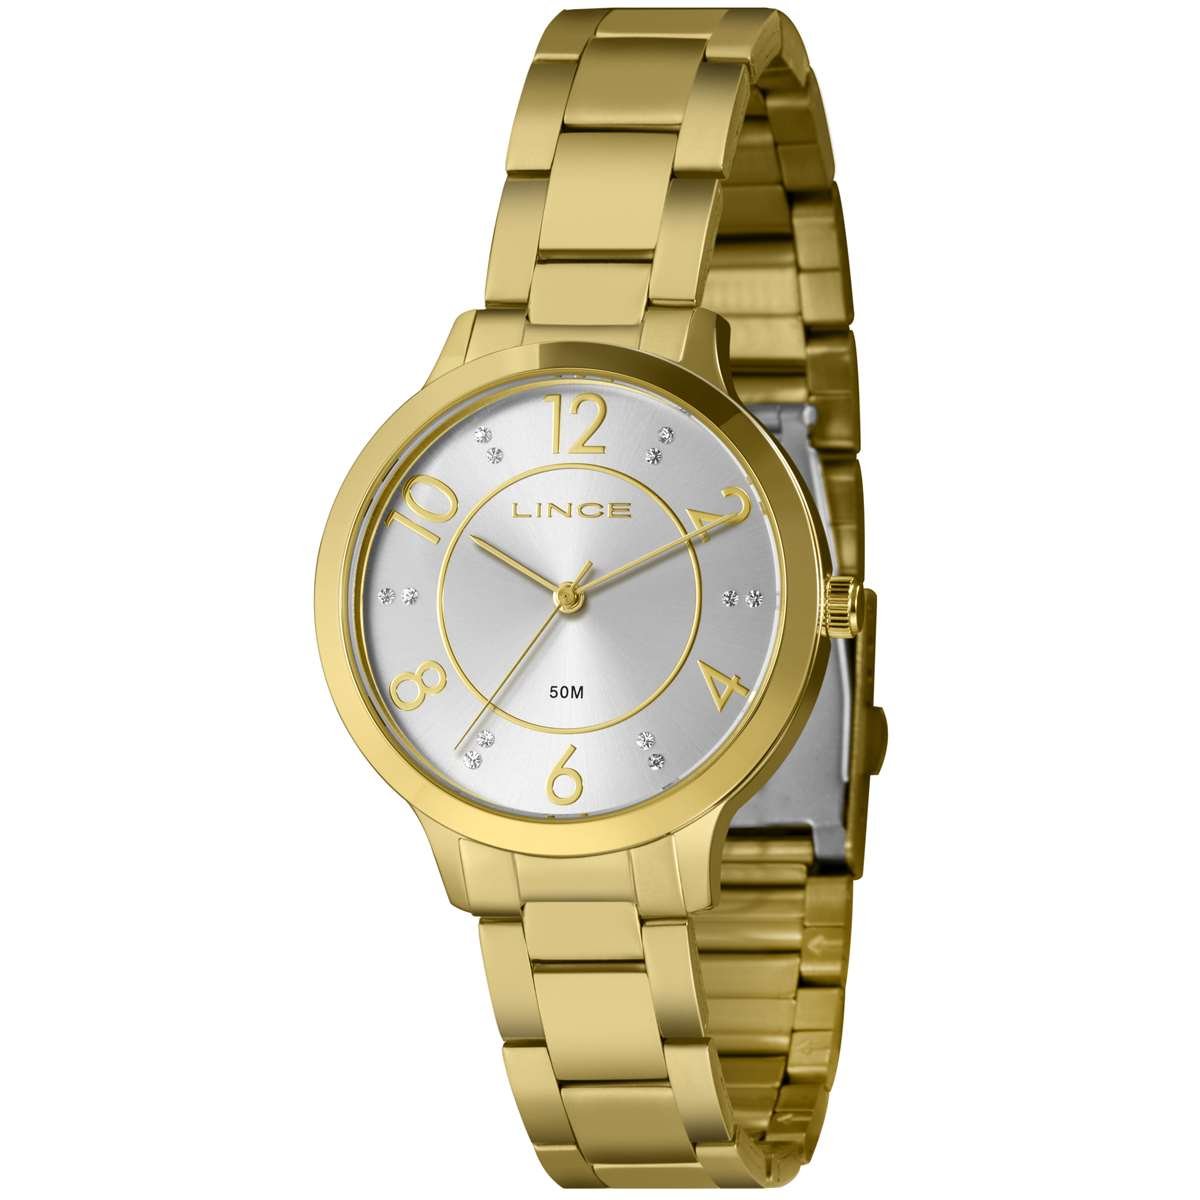 Relógio Lince Feminino Ref: Lrg4738l38 S2kx Casual Dourado Dourado 1